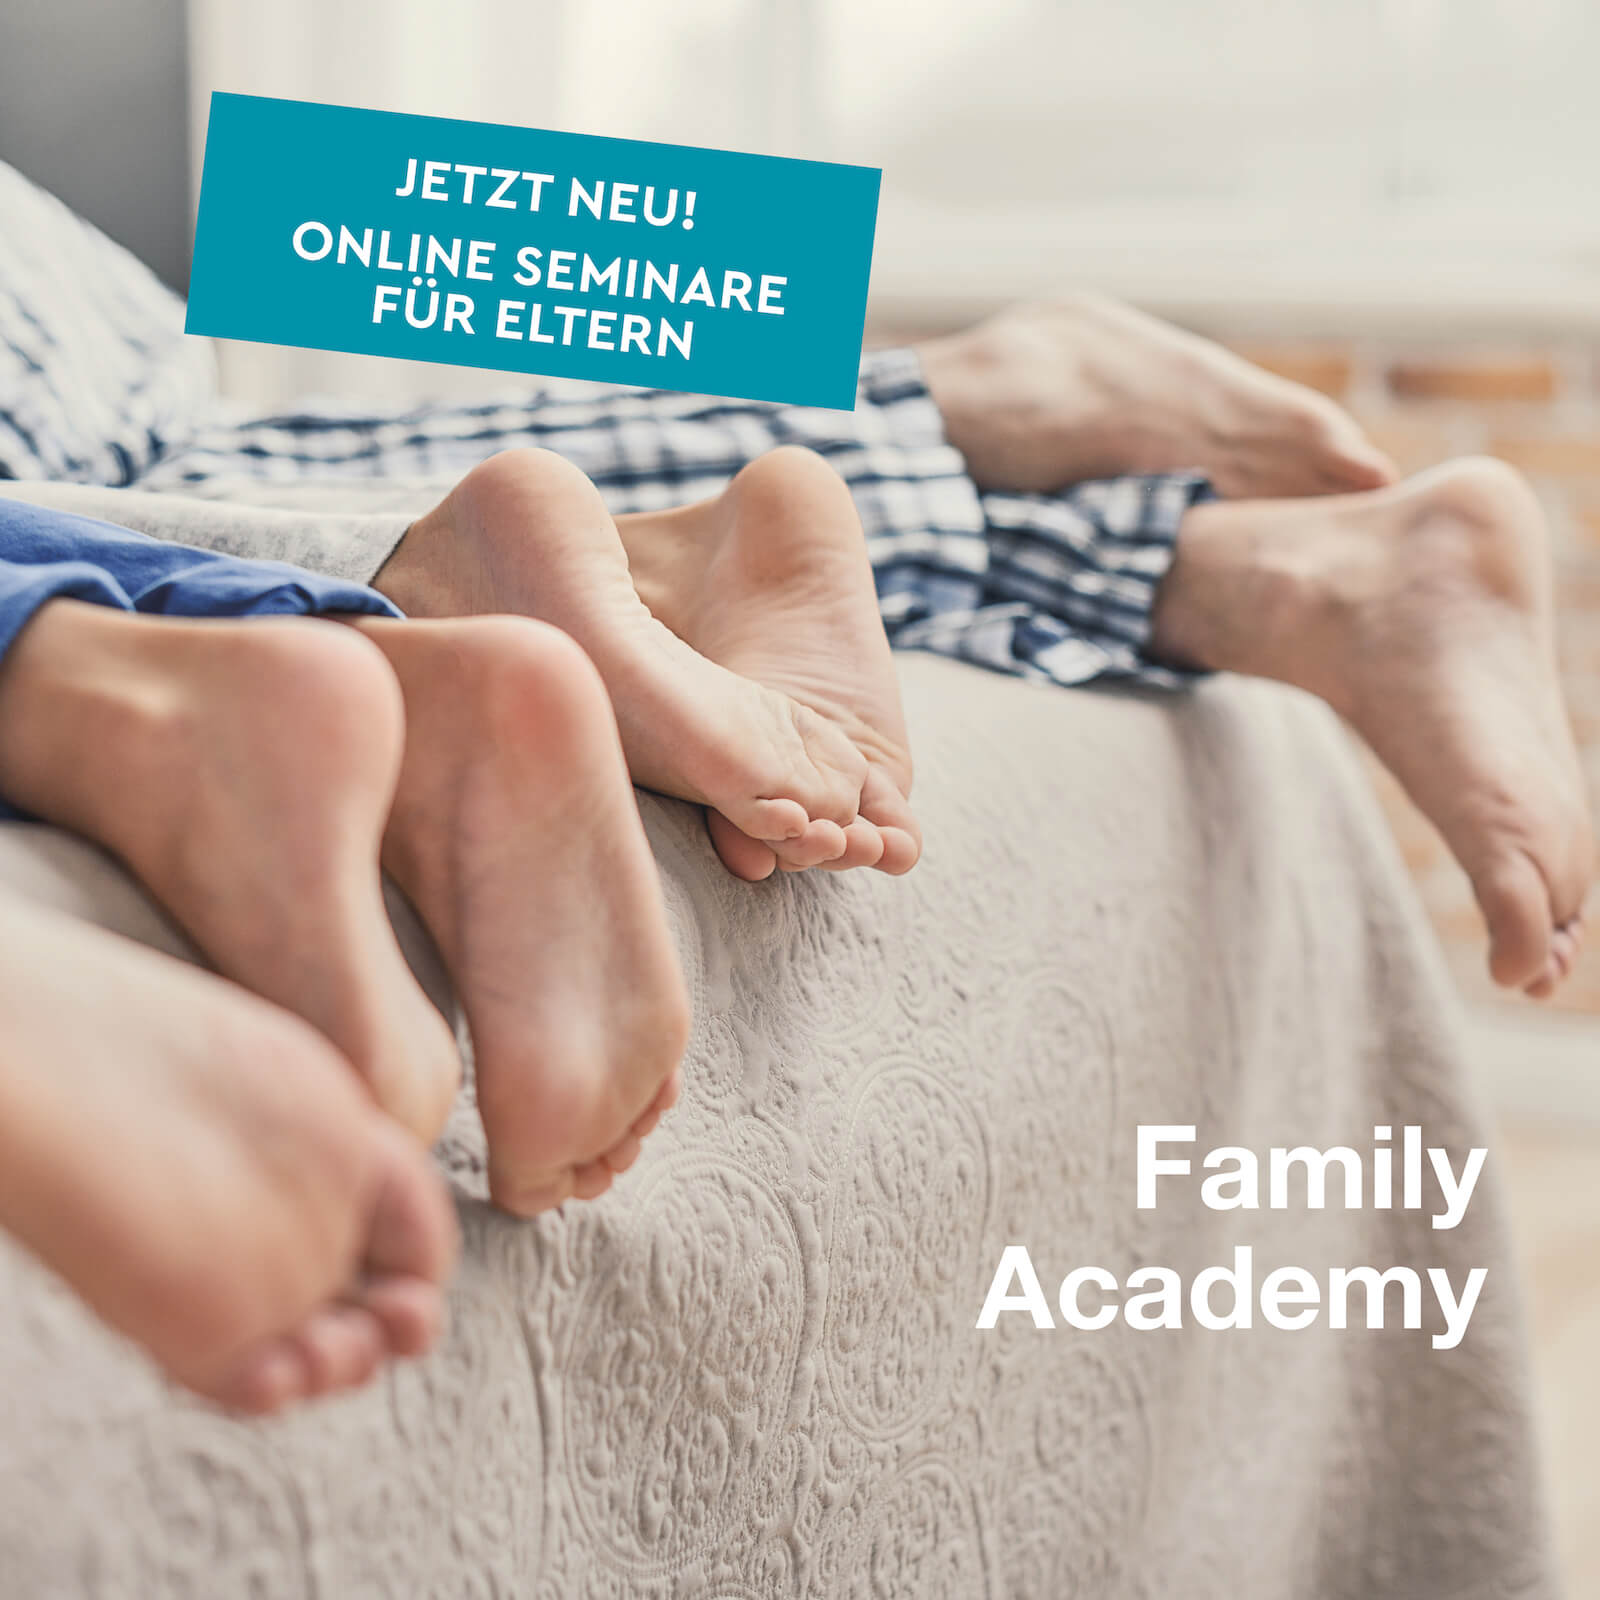 N4YK Family Academy mit online Seminaren für Eltern